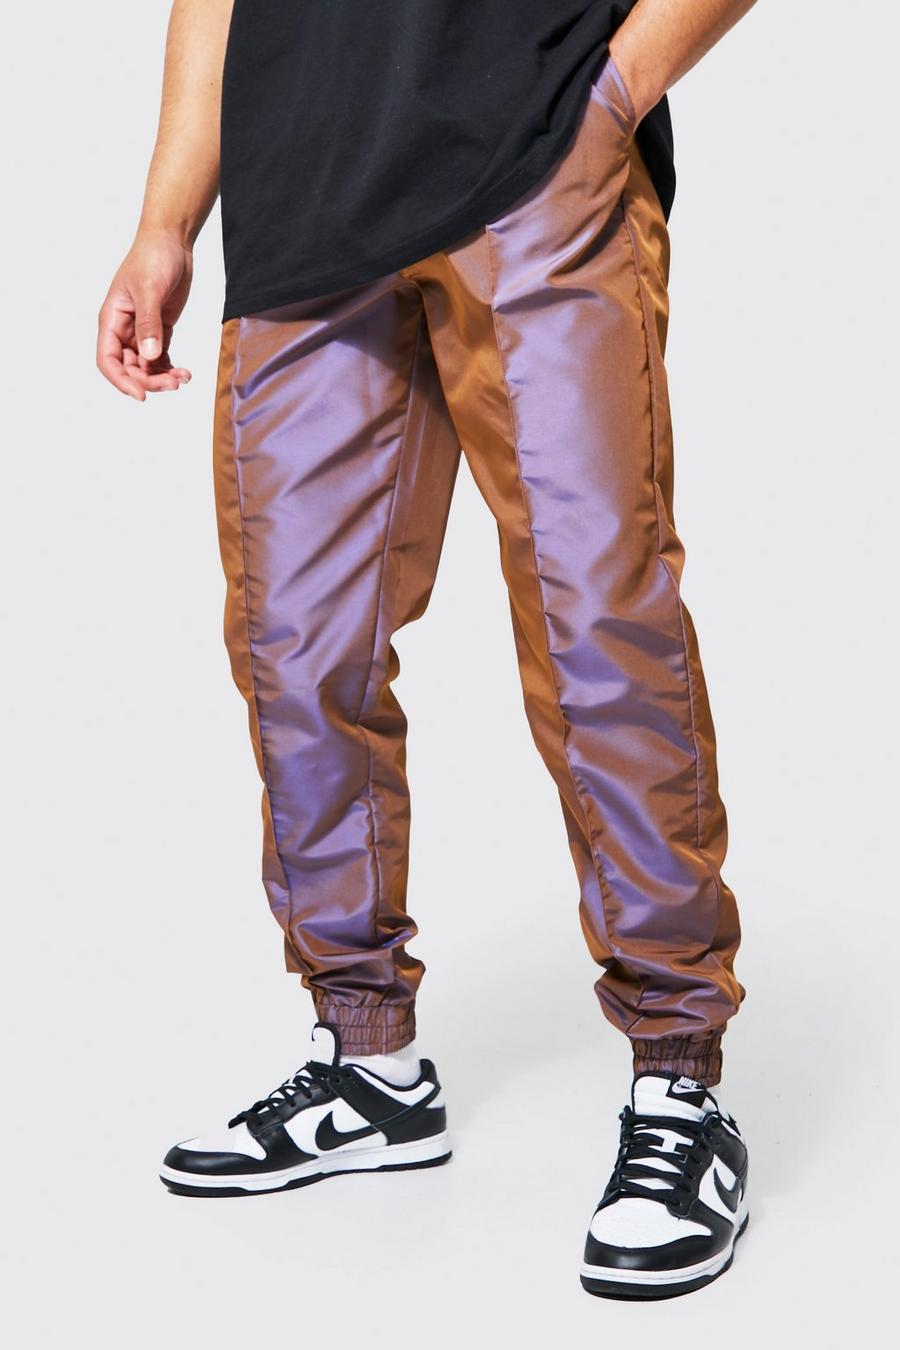 שוקולד marrone מכנסיים מחליפי צבעים בגזרה רגילה לגברים גבוהים